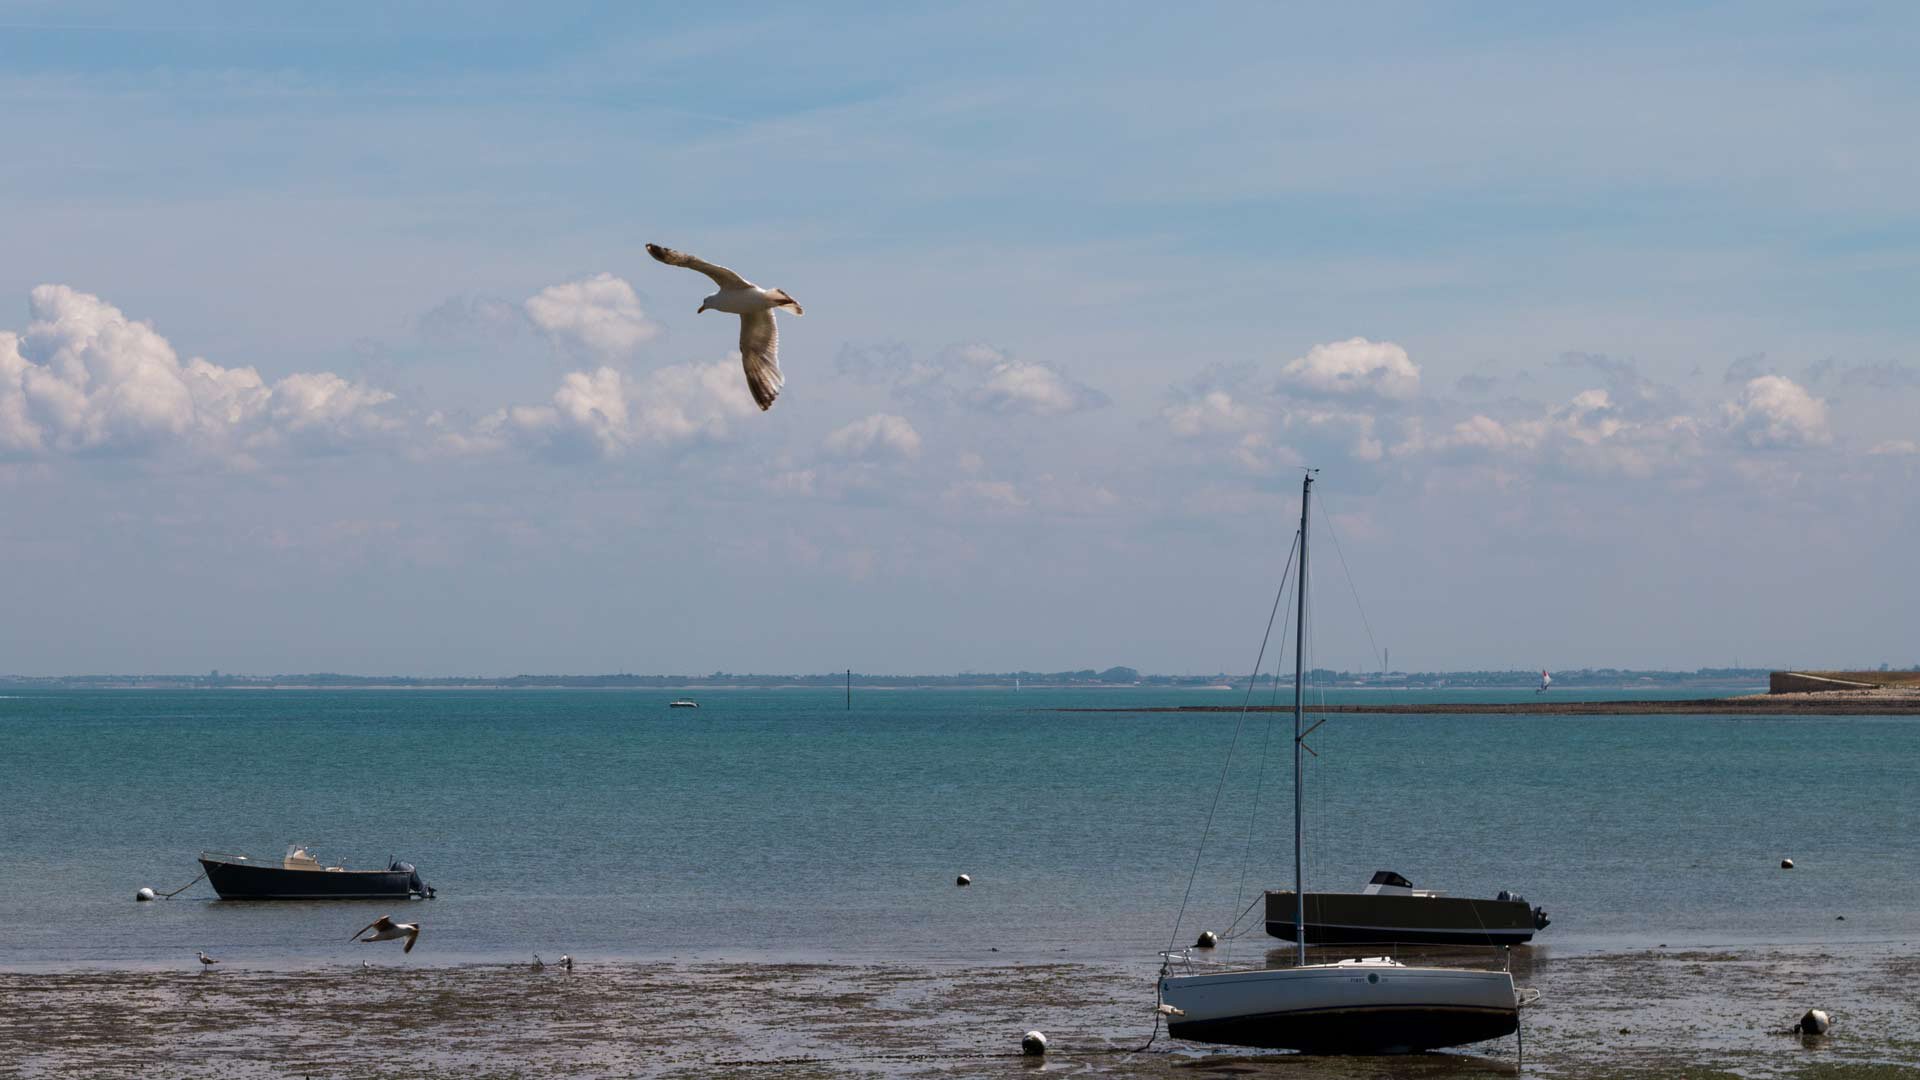 Une mouette vole au-dessus des bâteaux des côtes de La Flotte, sur l'île de Ré.